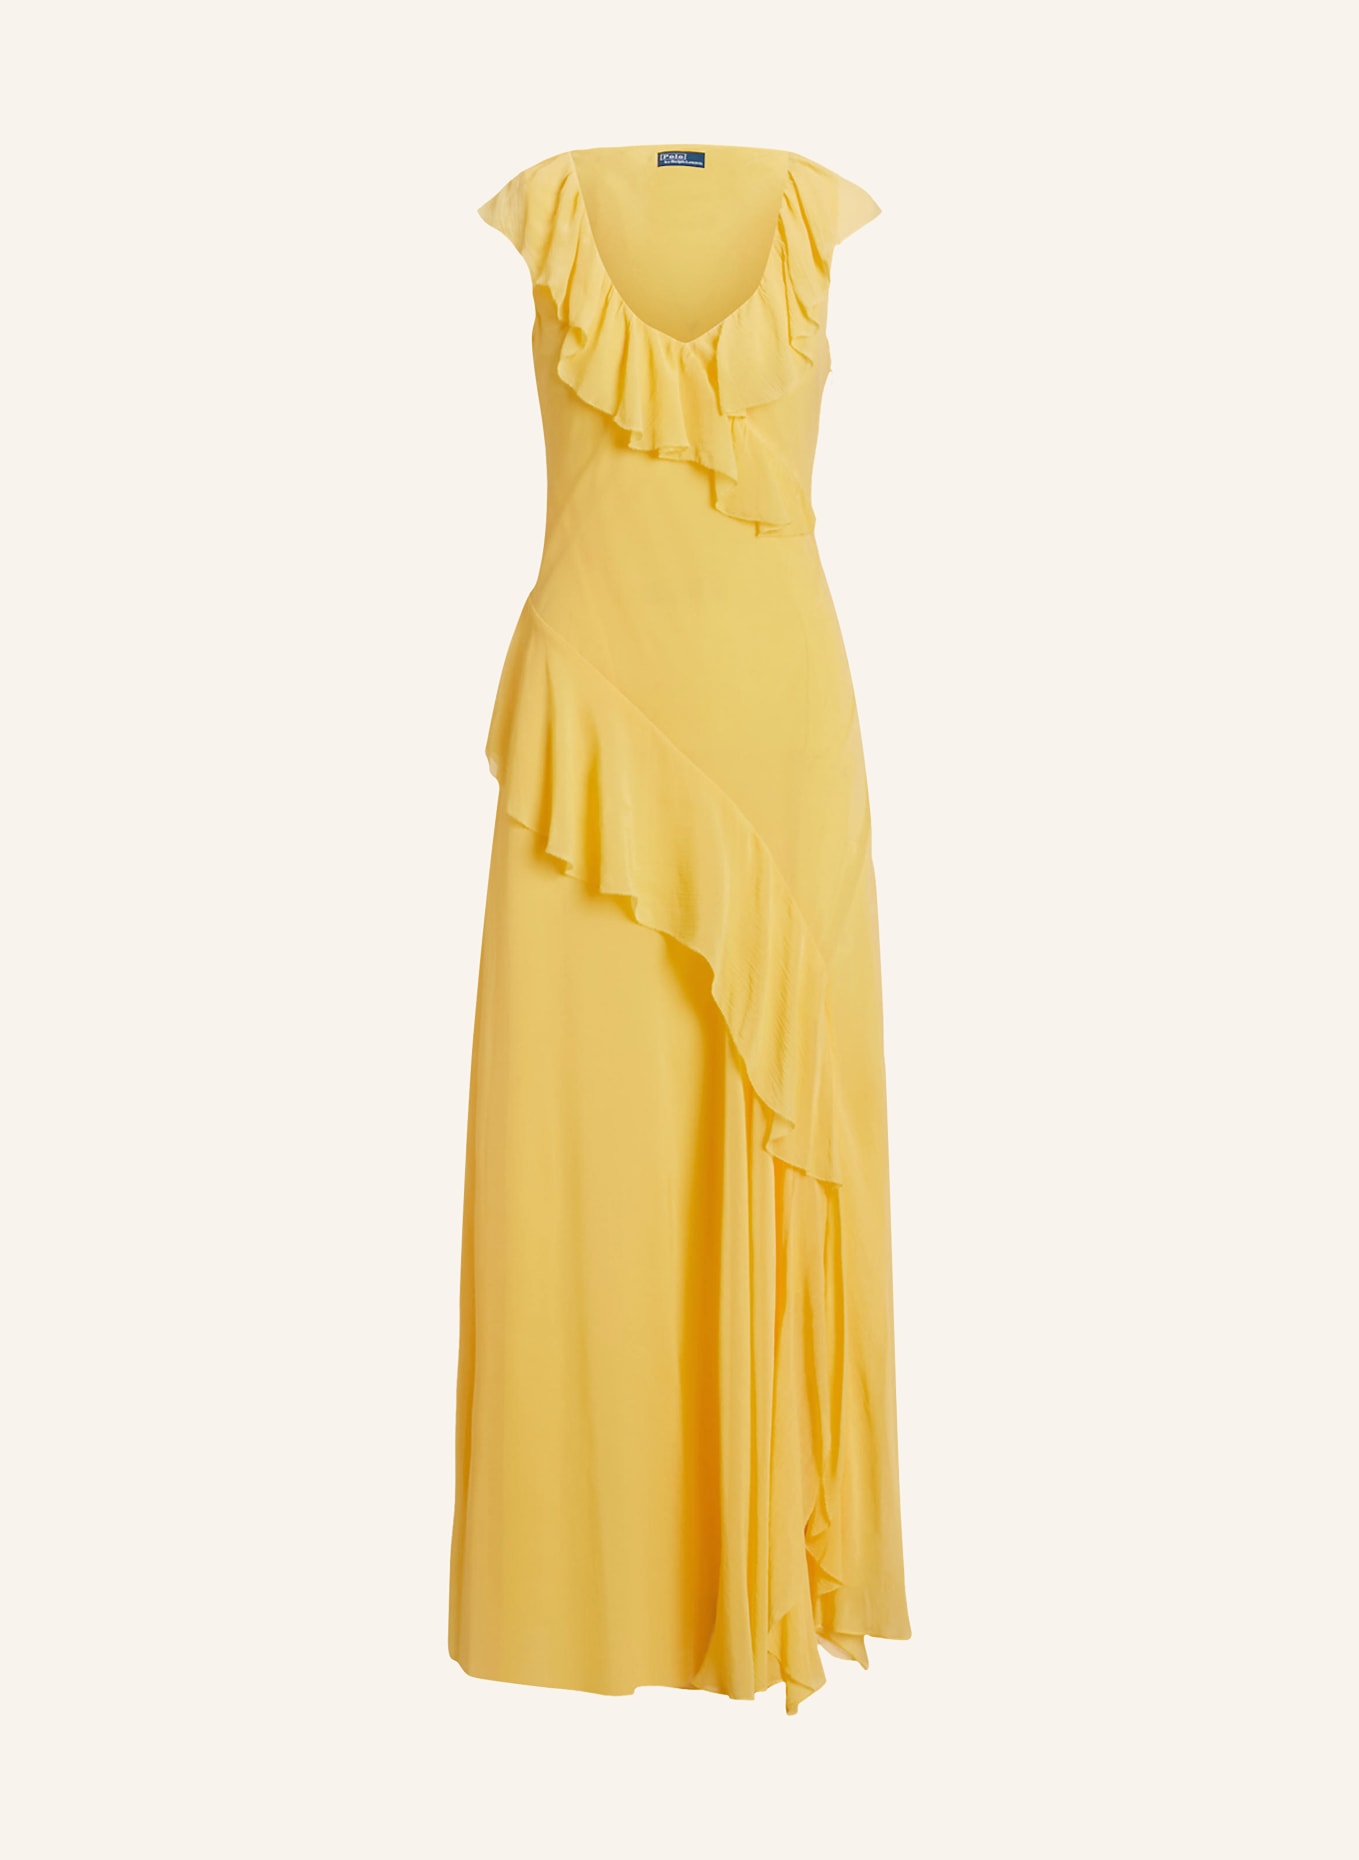 POLO RALPH LAUREN Kleid mit Volants, Farbe: GELB (Bild 1)